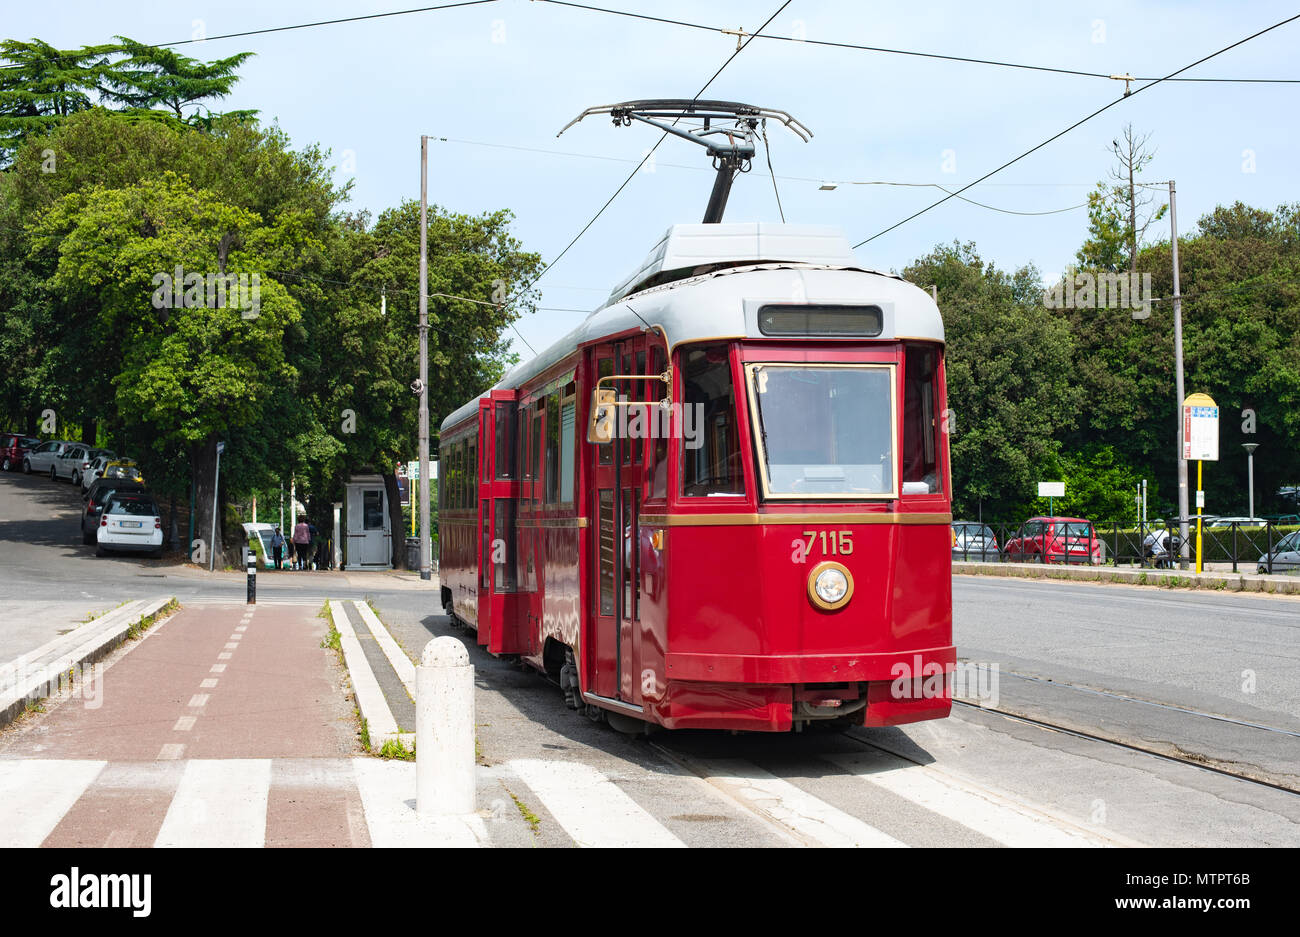 Vintage ancien tramway électrique à l'arrêt station, environnement propre ville moyens de transport Banque D'Images